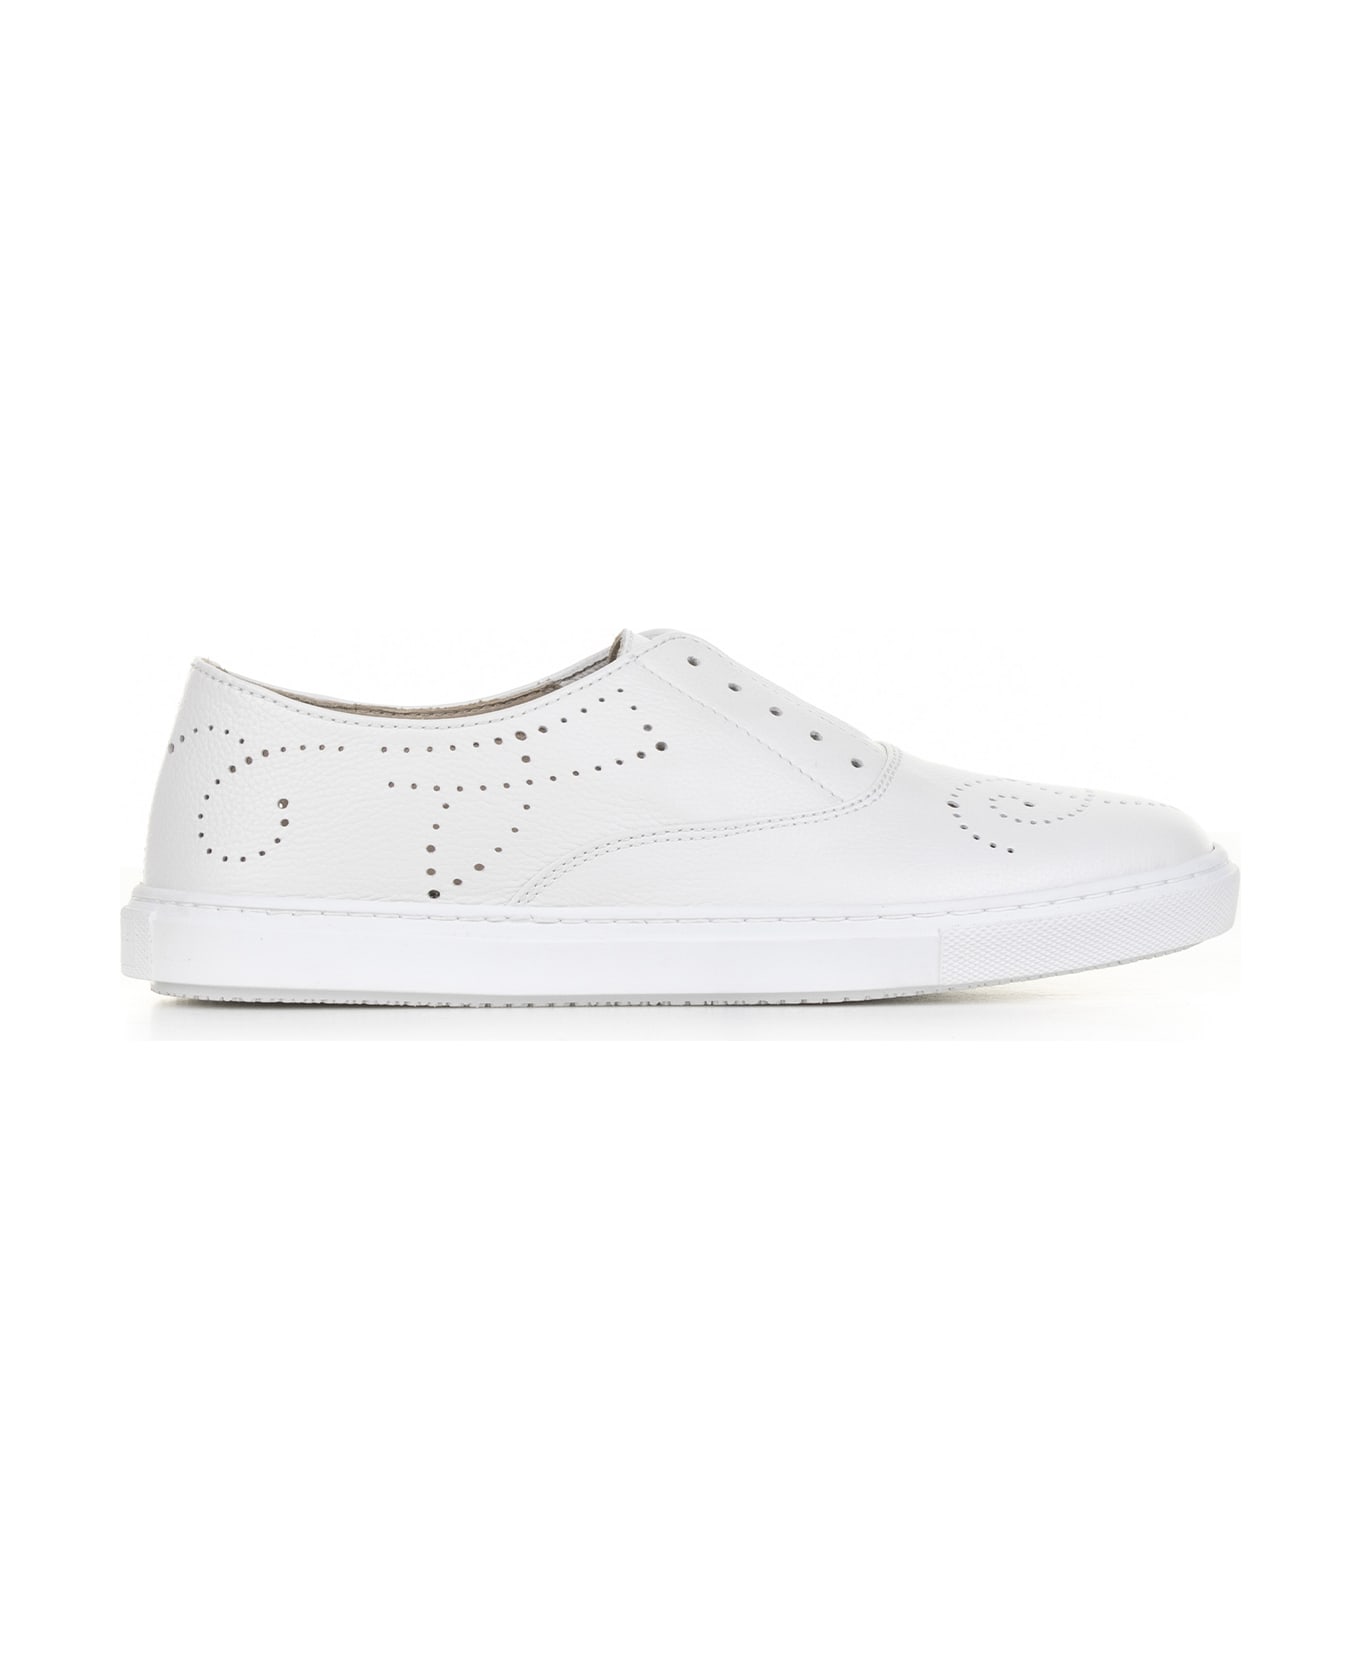 Fratelli Rossetti One White Leather Slip-on Sneaker - BIANCO スニーカー